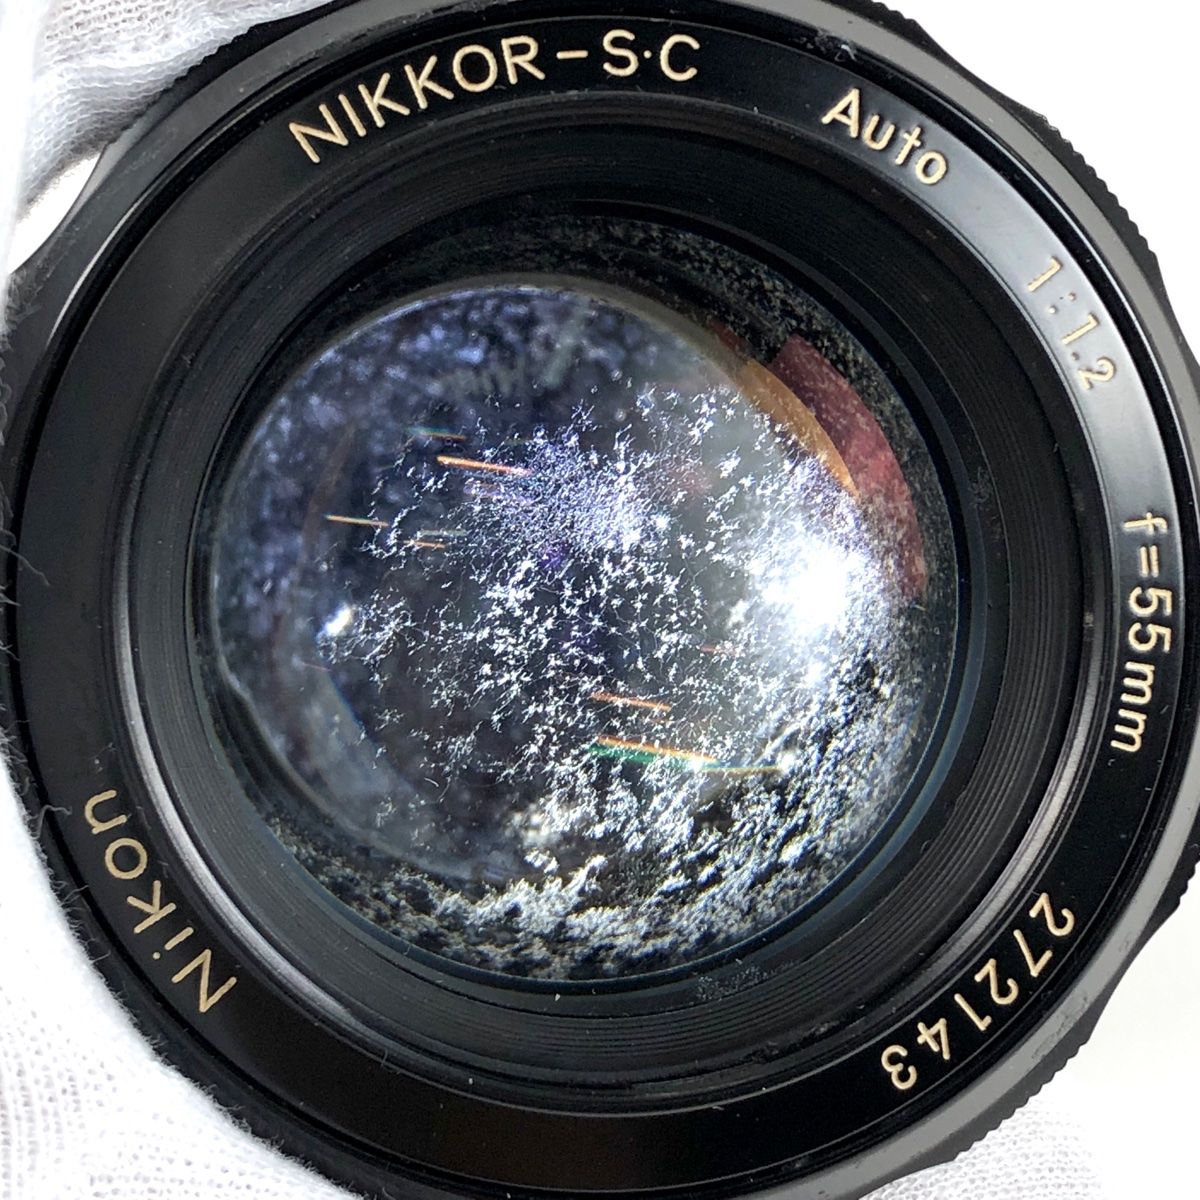 Nikon NIKKOR-S.C Auto 55mm F1.2 非Ai - レンズ(単焦点)